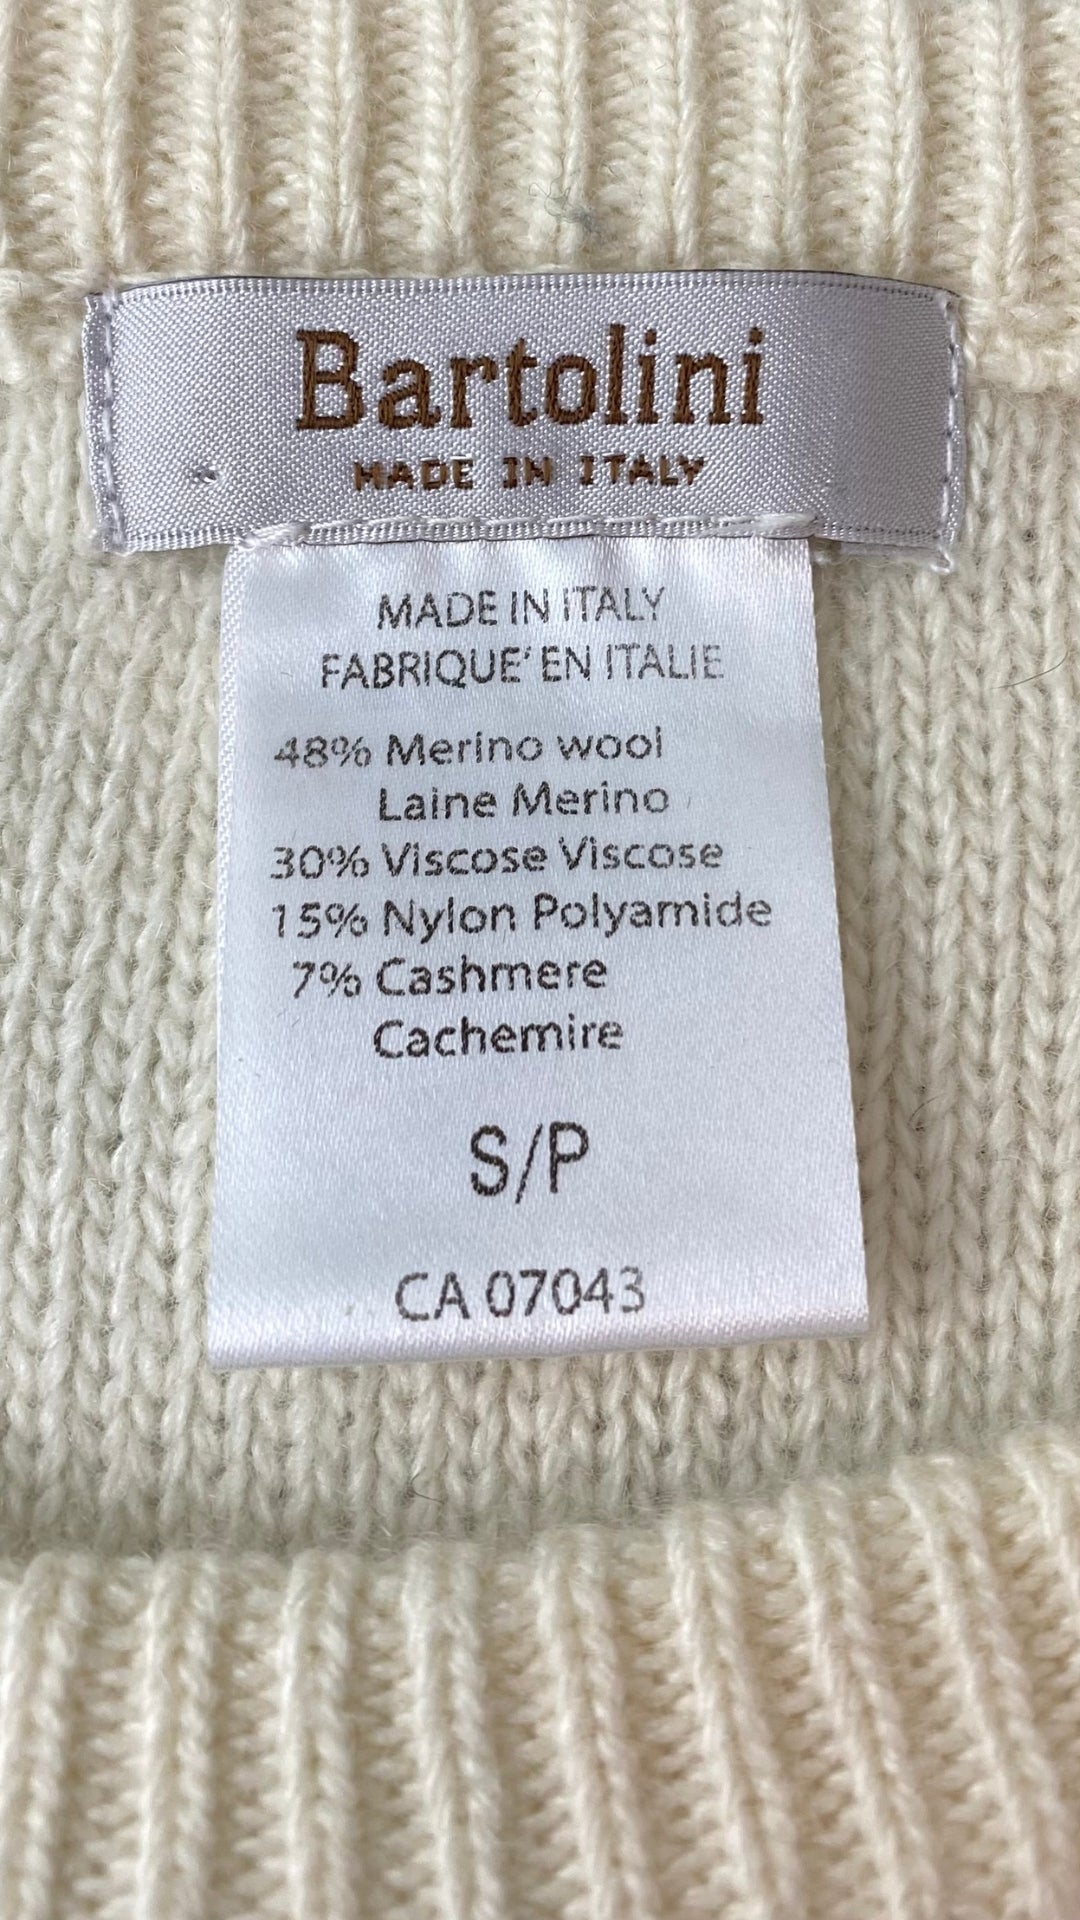 Chandail tricot douillet crème à franges Bartolini, taille small. Vue de l'étiquette de marque et taille et composition.